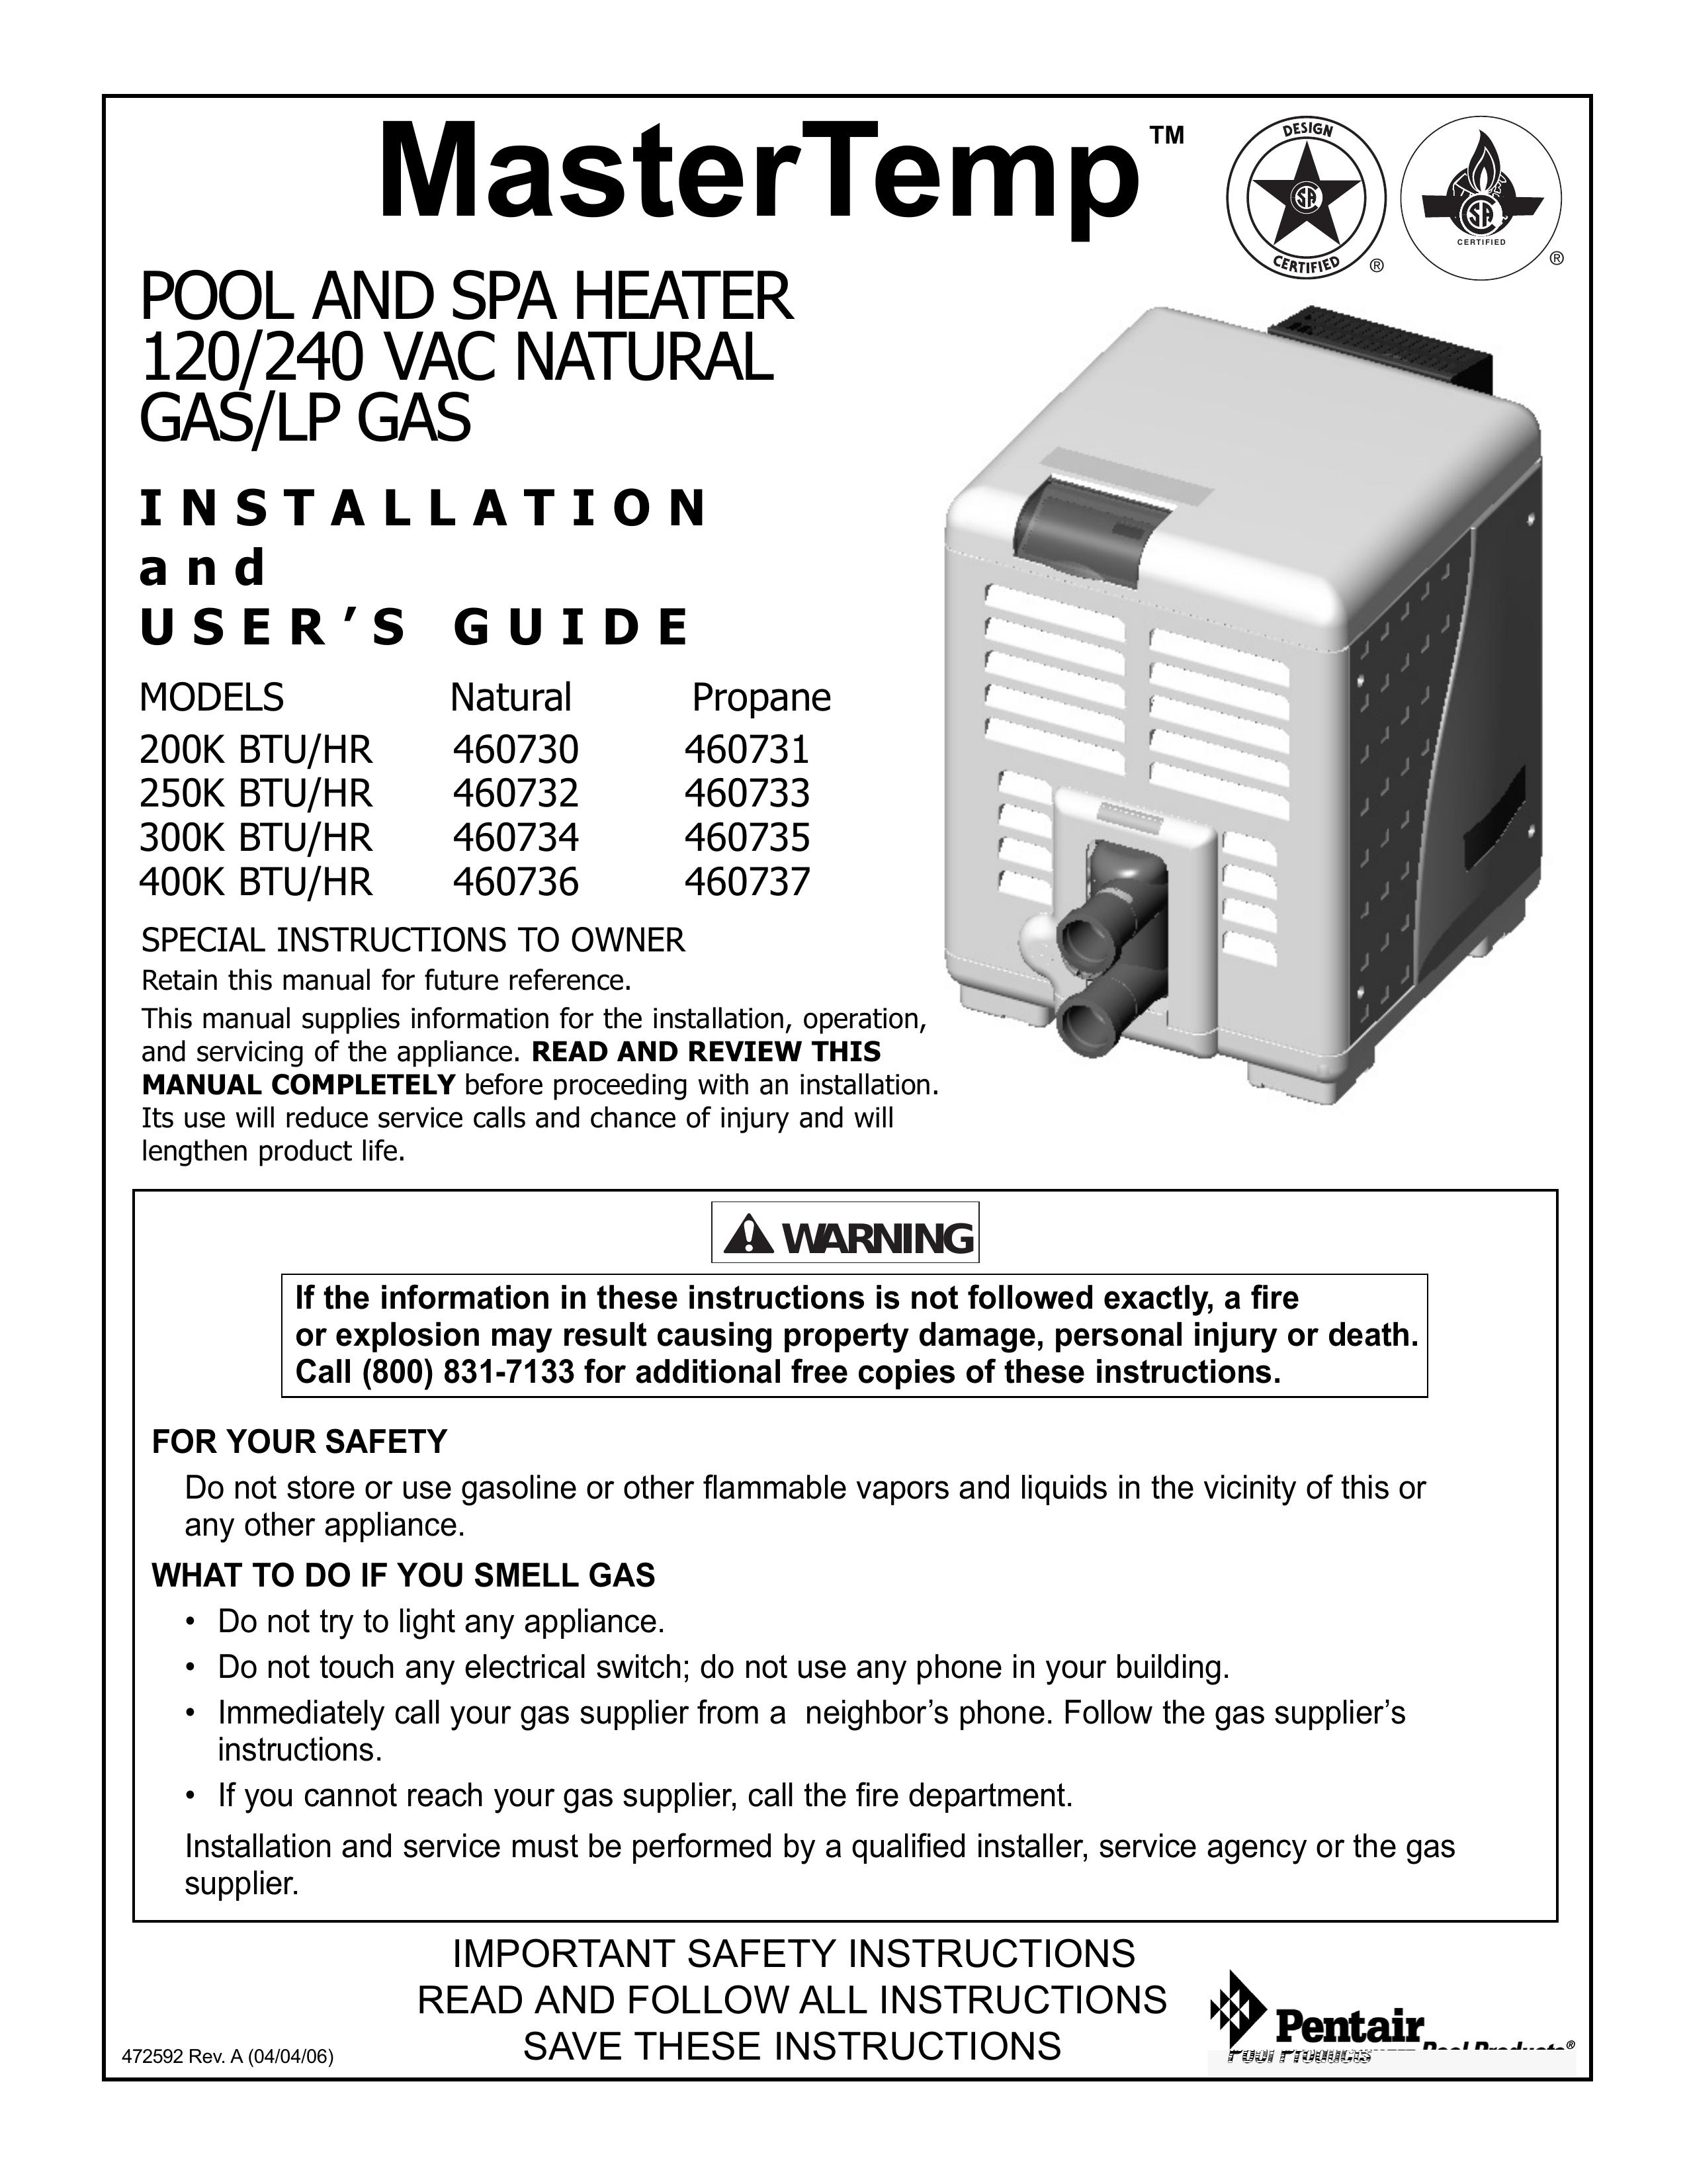 Pentair 250K BTU/HR Swimming Pool Heater User Manual